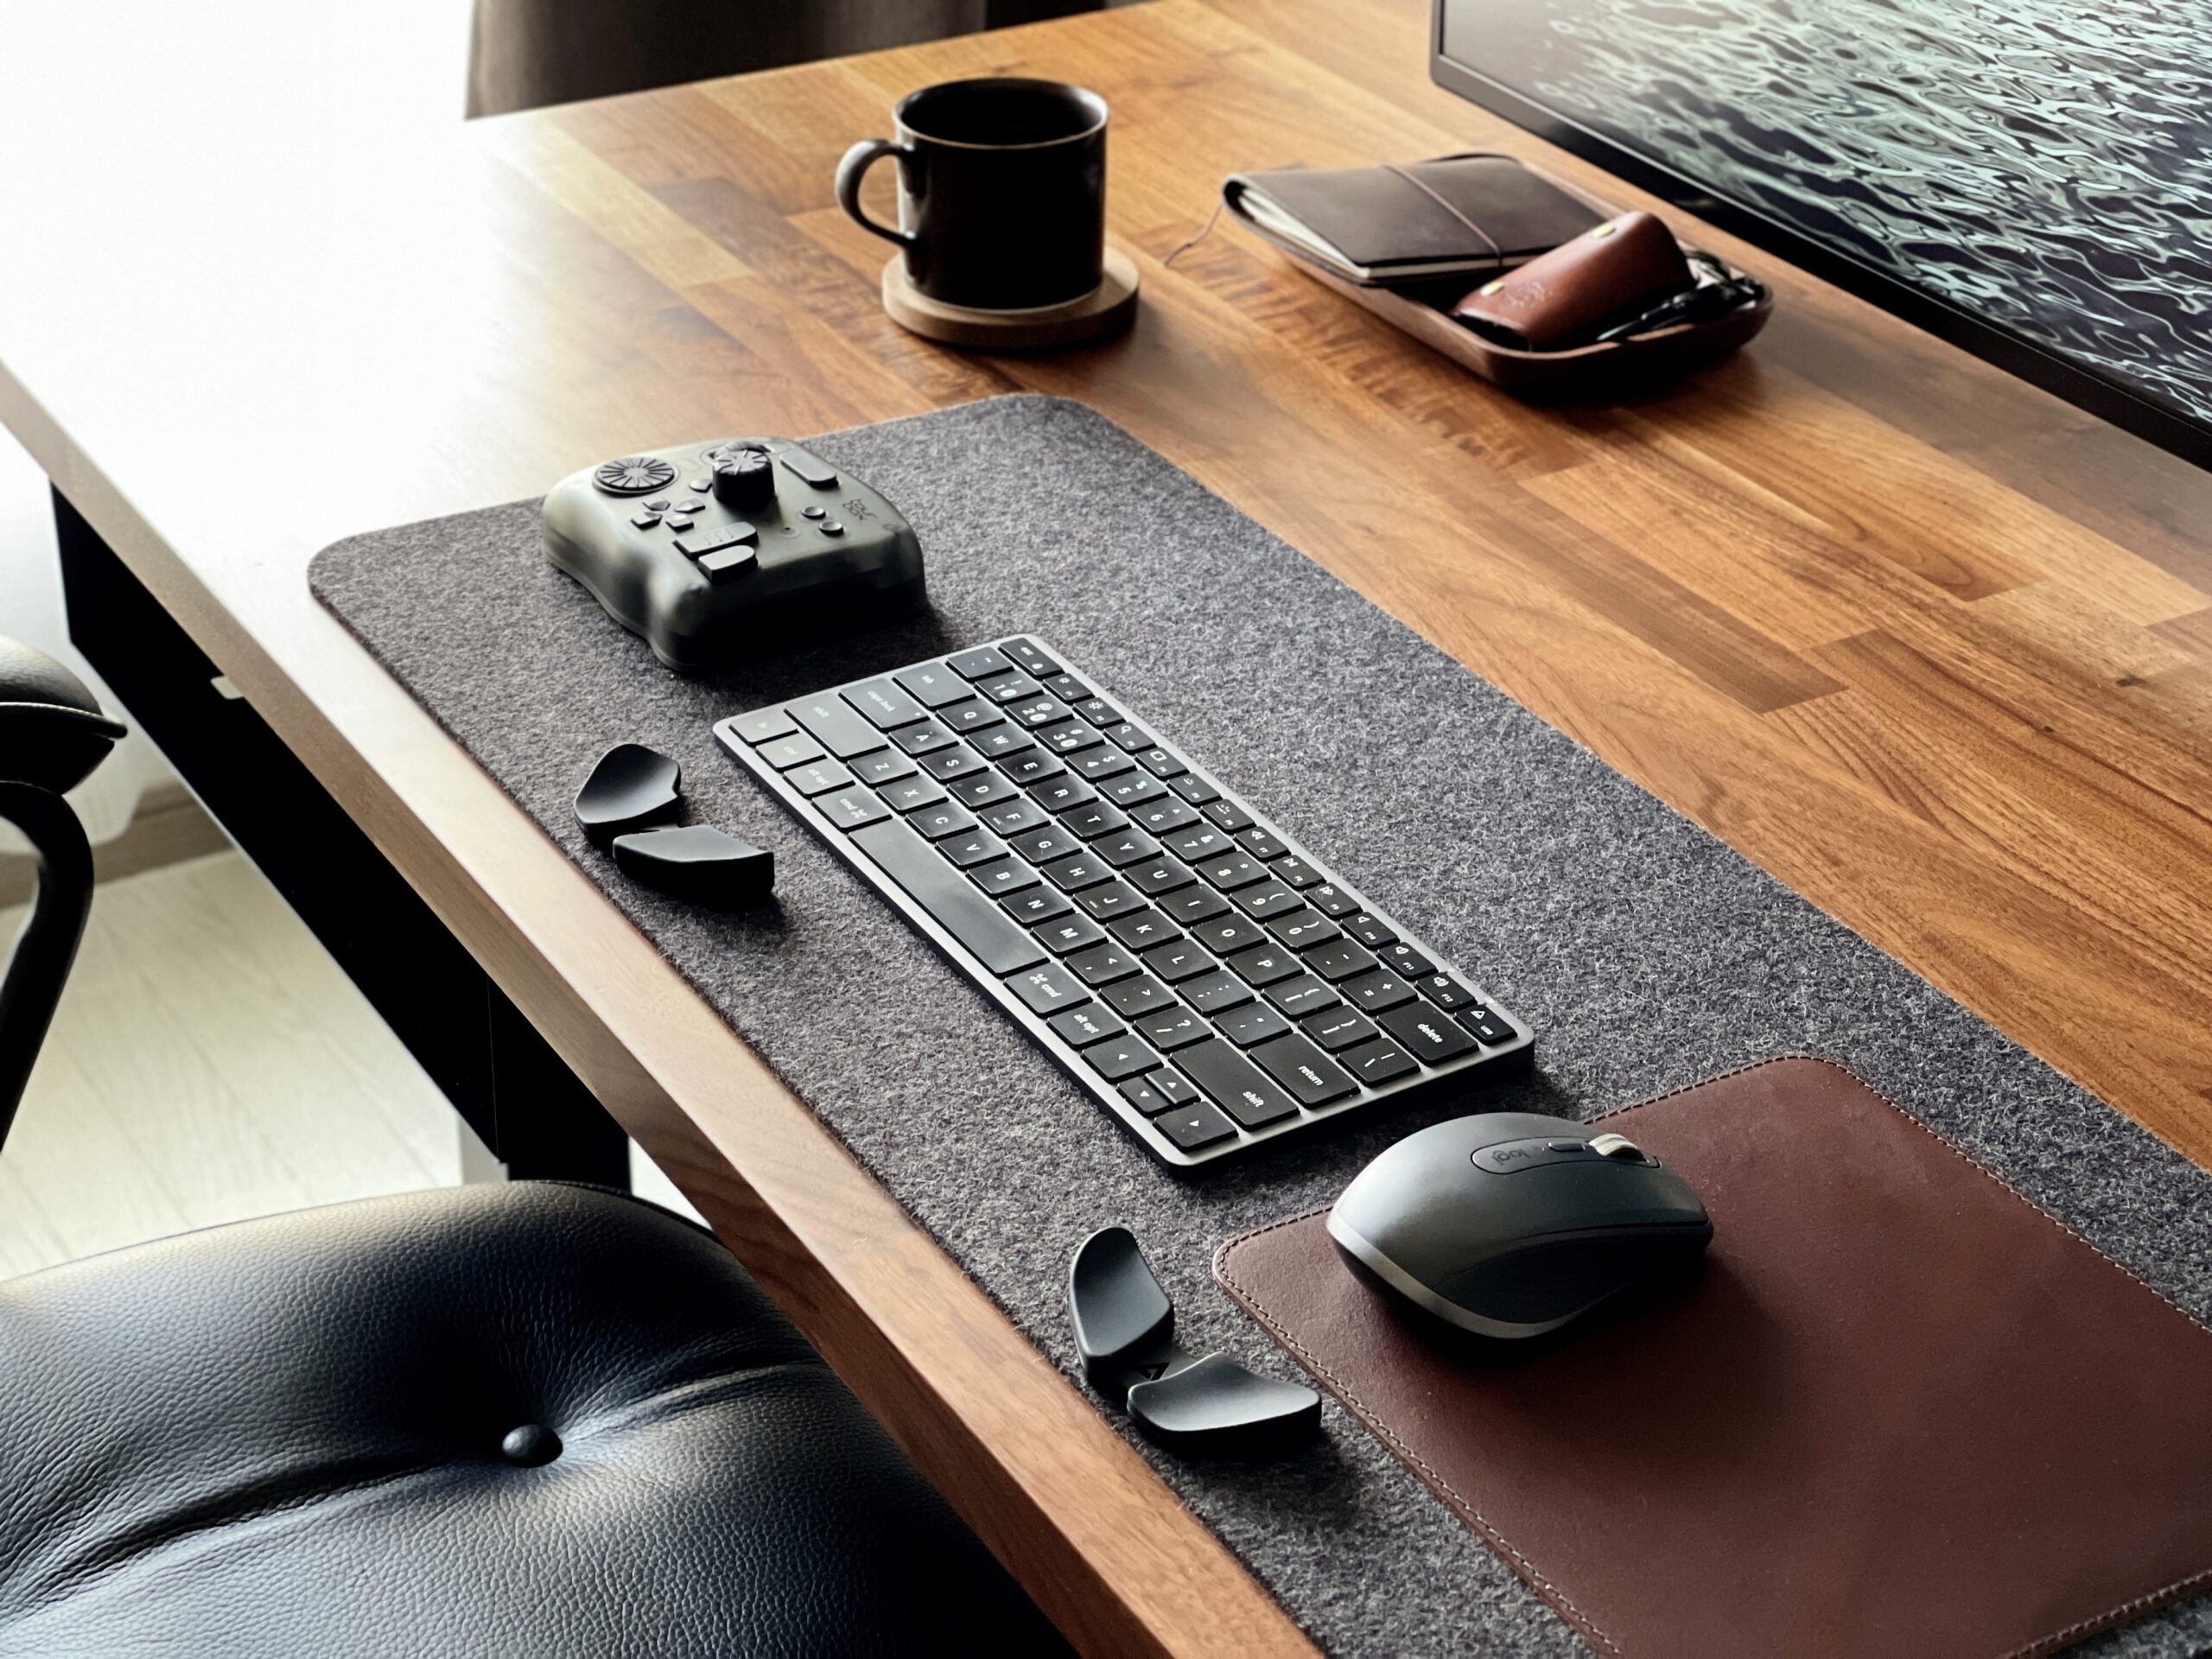 Carpio2.0 2つをキーボード、マウス、左手デバイス兼用のリストレストとしてデスクパッド上での使用風景